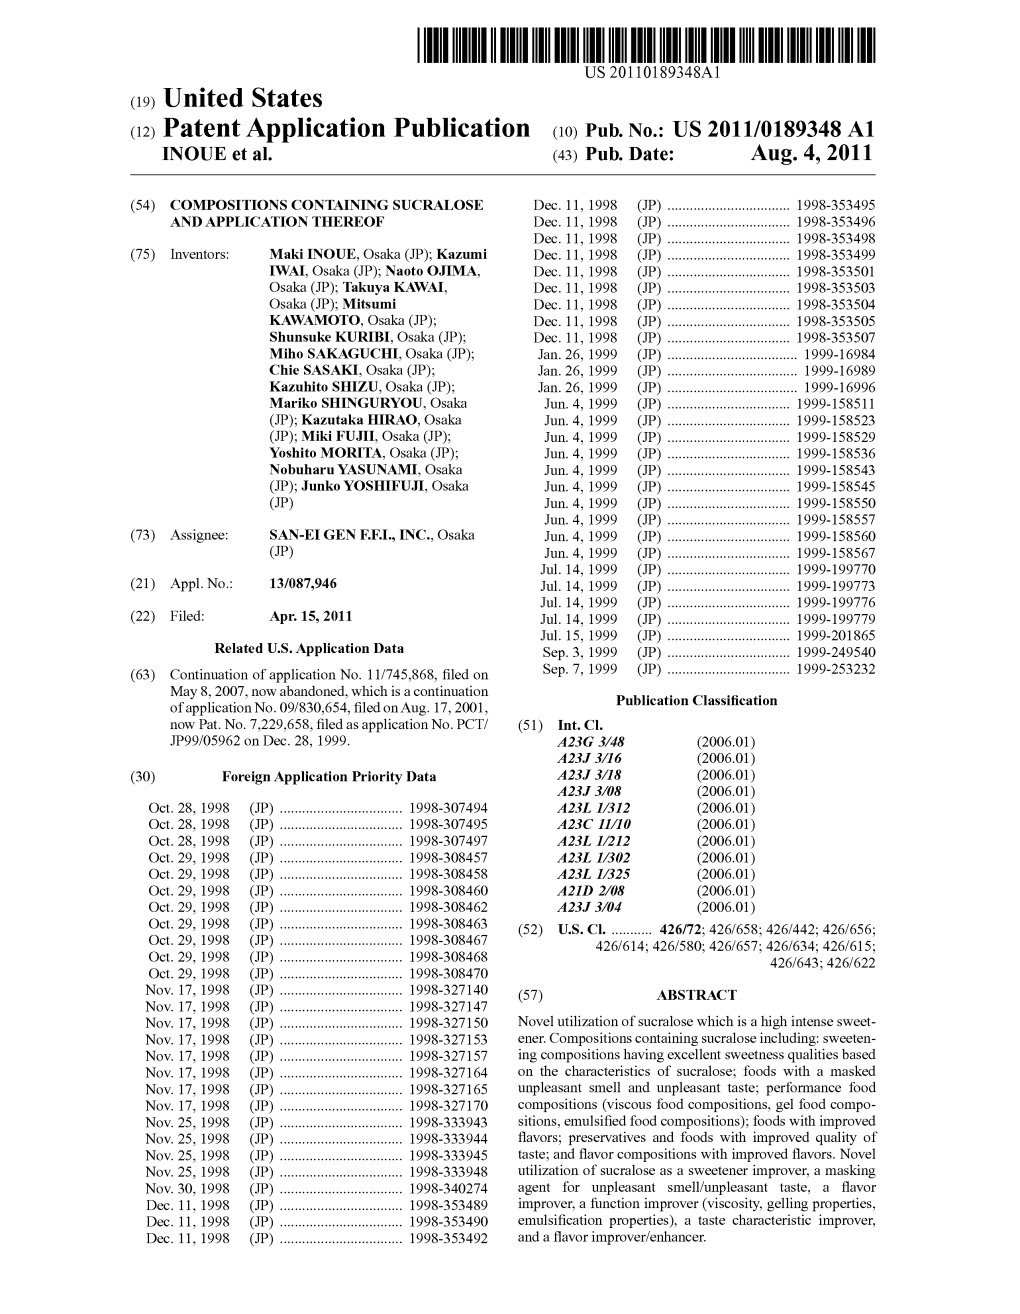 (12) Patent Application Publication (10) Pub. No.: US 2011/0189348 A1 NOUE Et Al